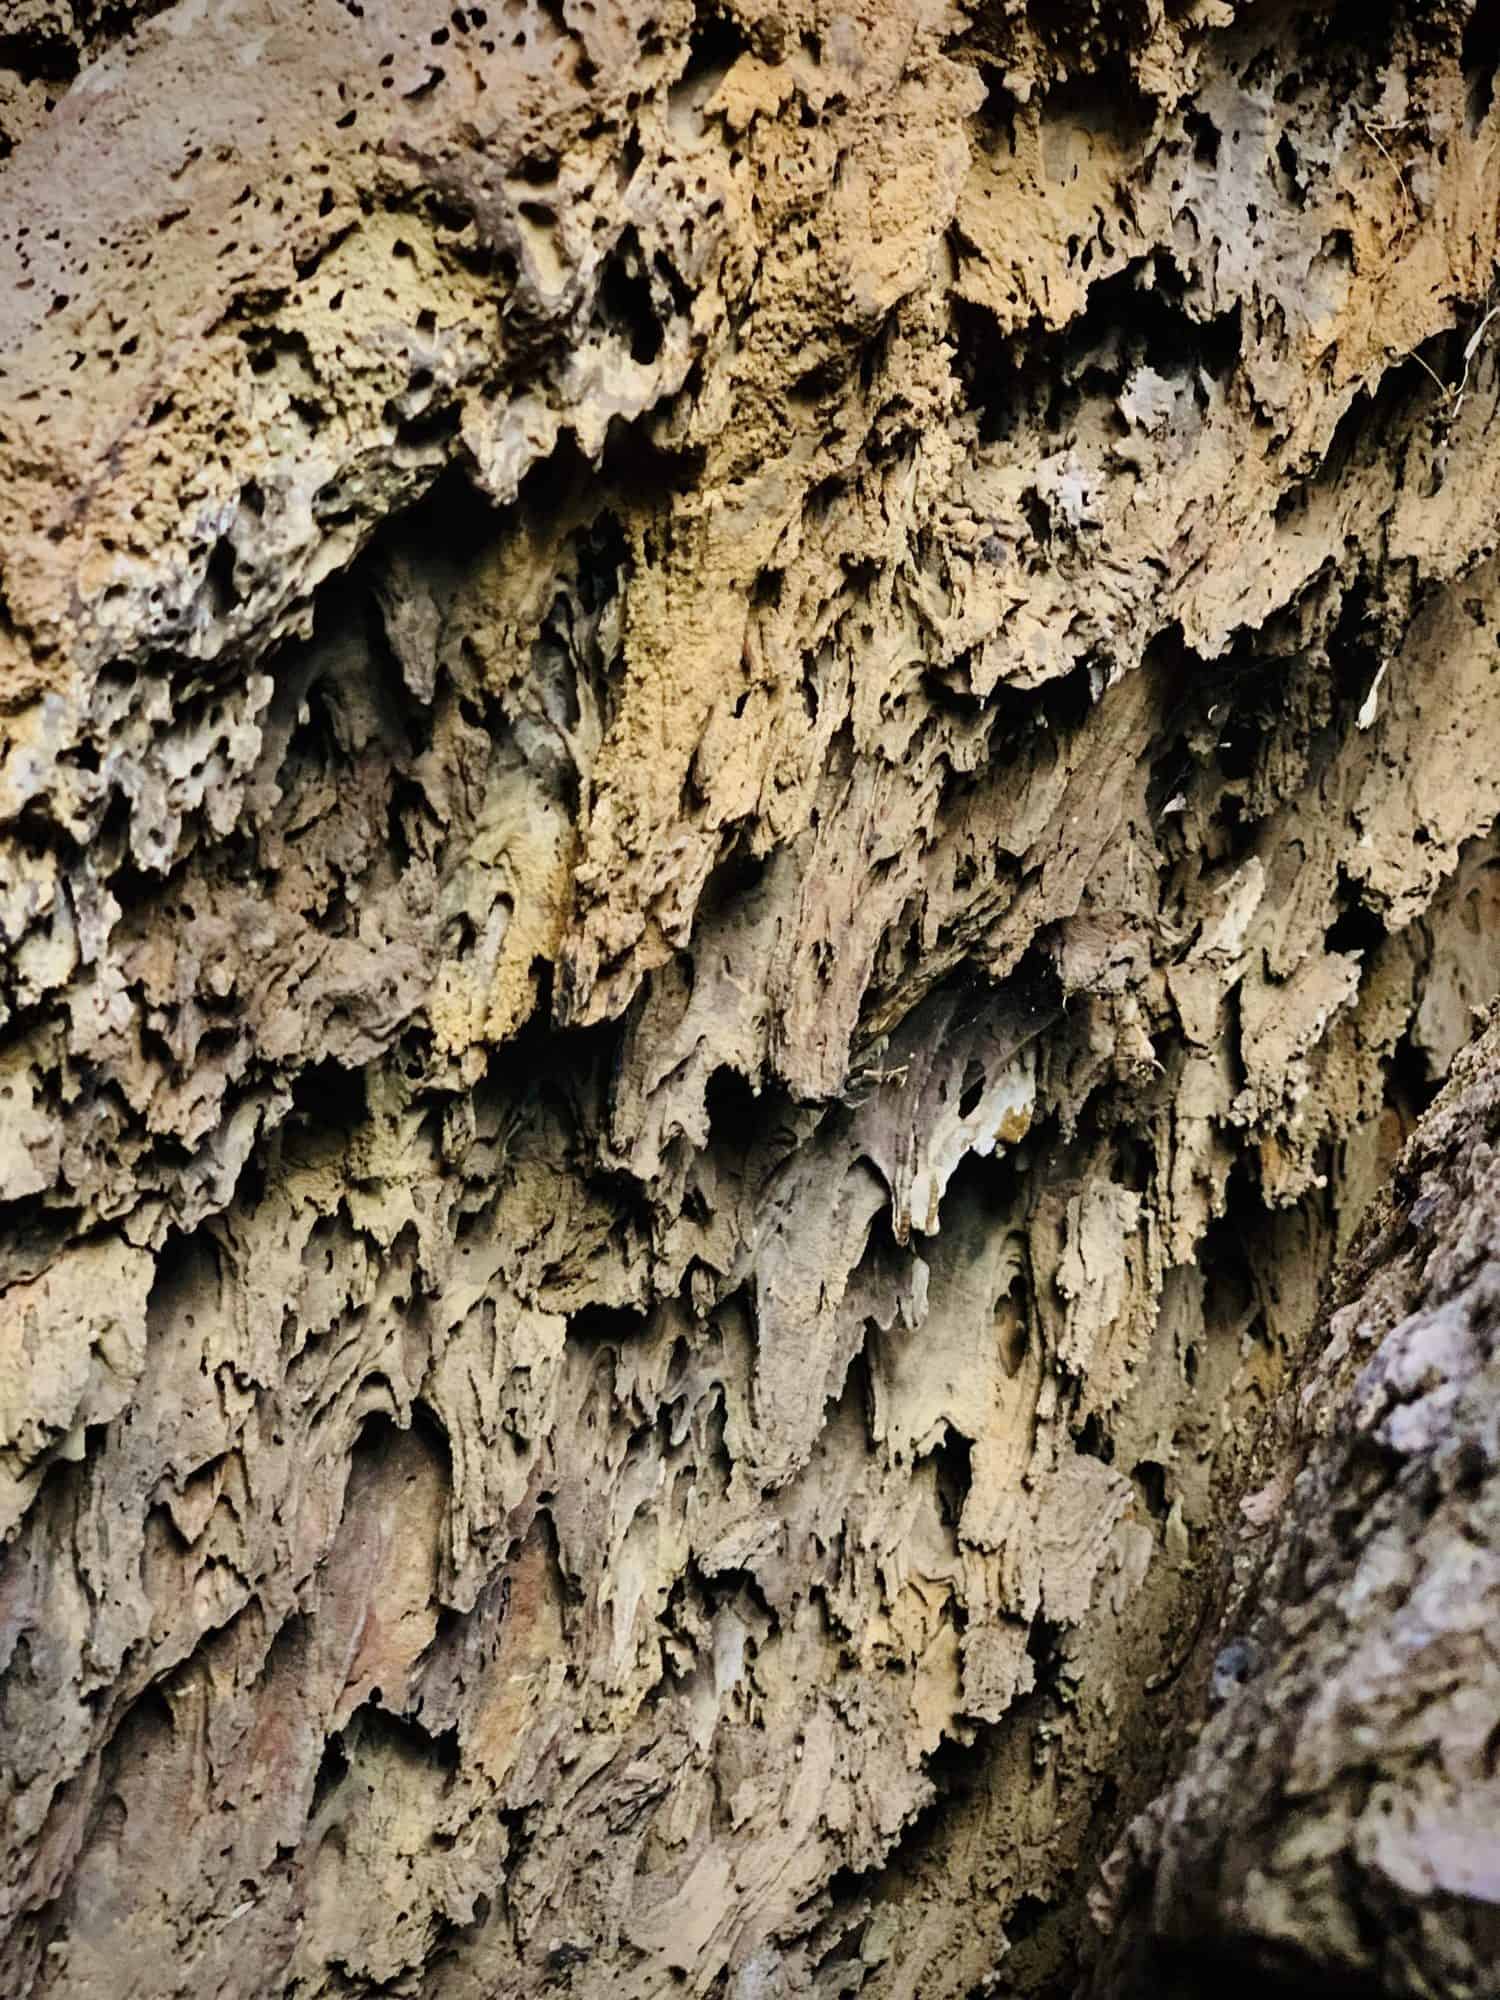 Textures of Lava Rock, No. 2